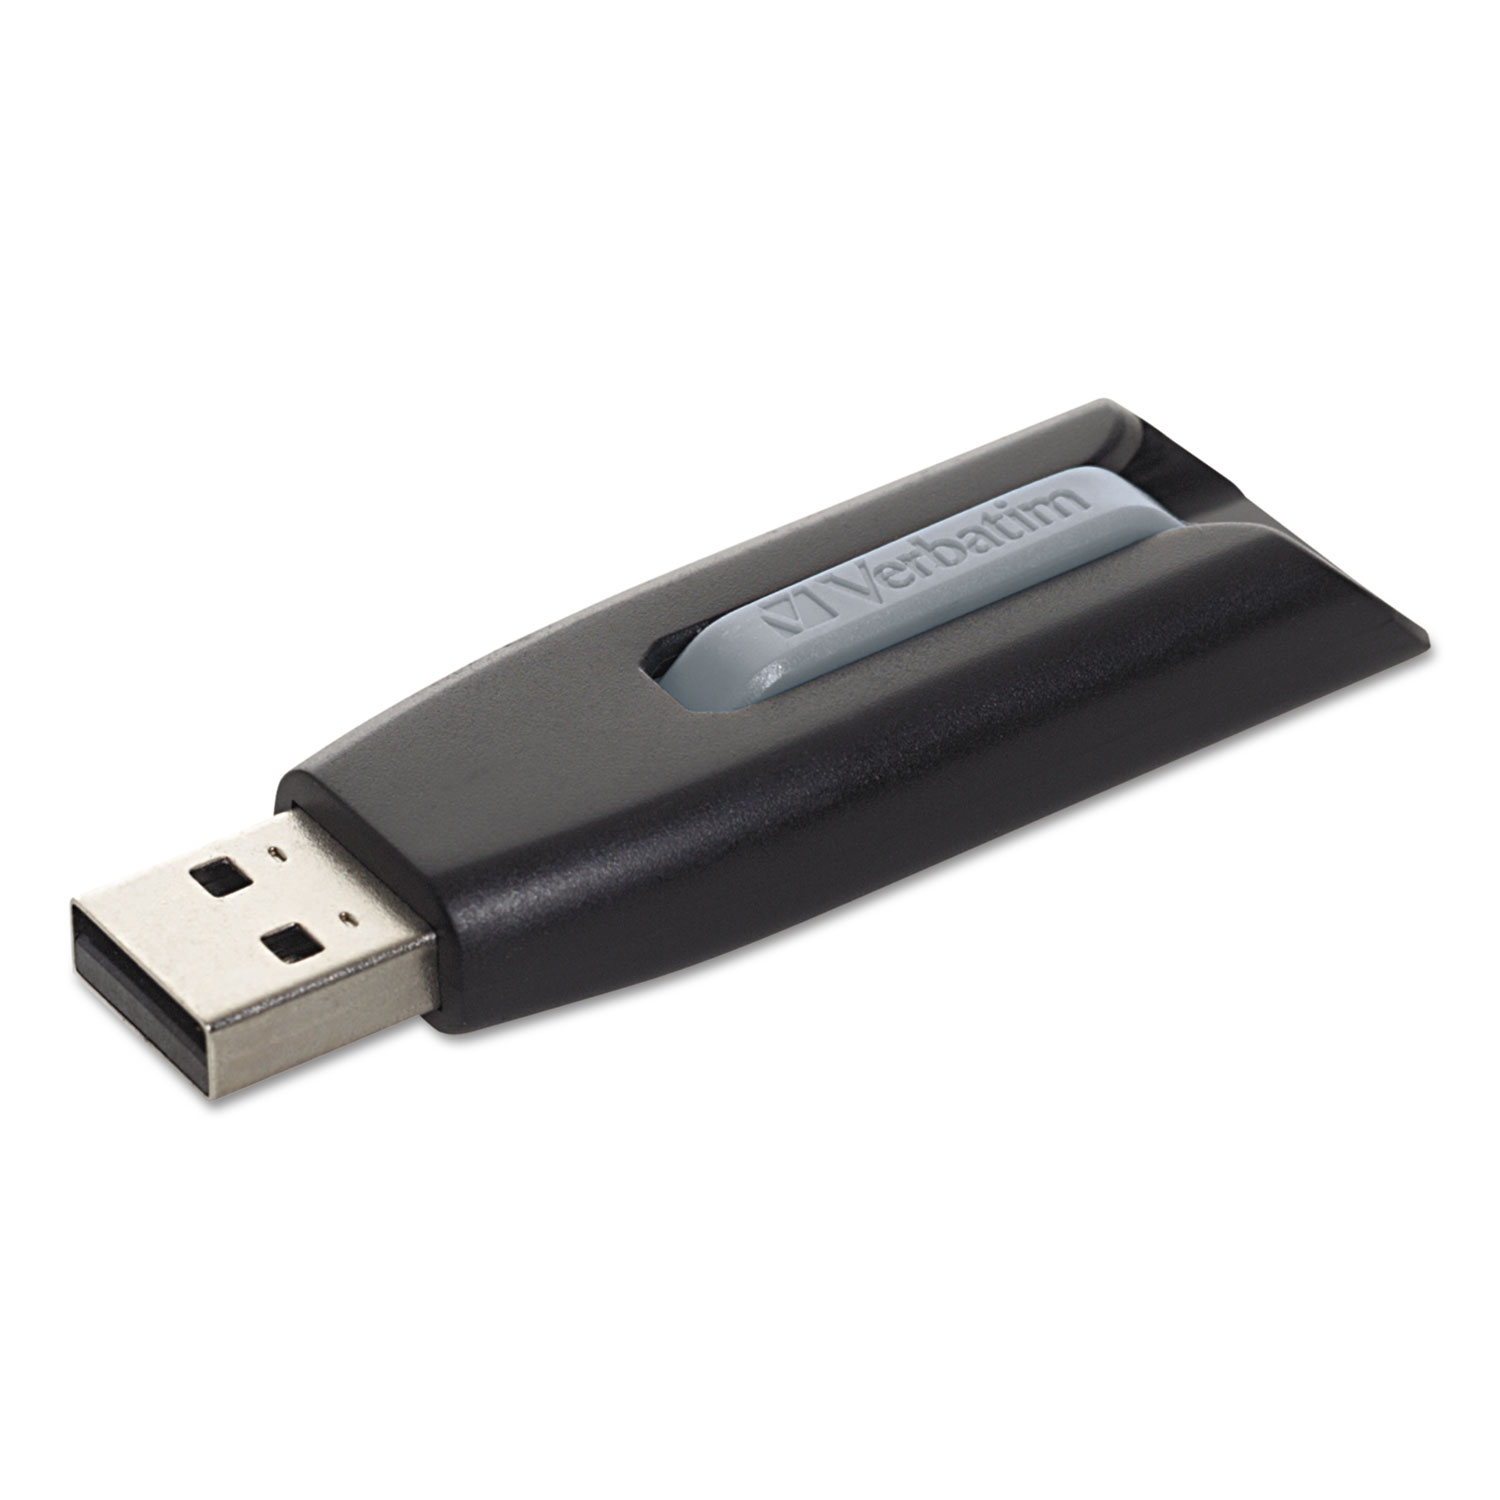  Verbatim 49189 Store 'n' Go V3 USB 3.0 Drive, 128 GB, Black/Gray (VER49189) 